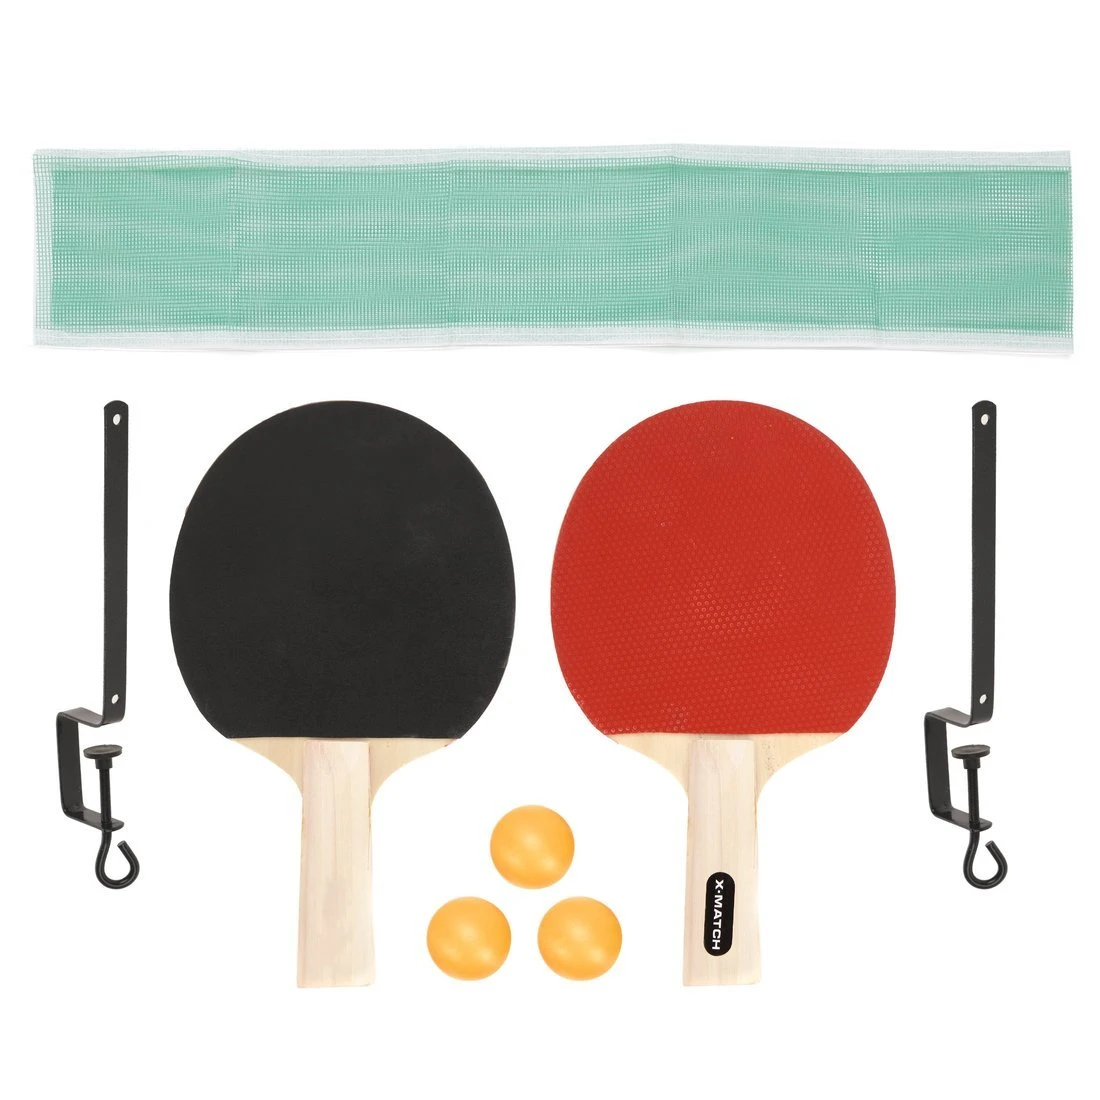 Набор для настольного тенниса, комплектность: 2 ракетки 5 мм., 3 шарика